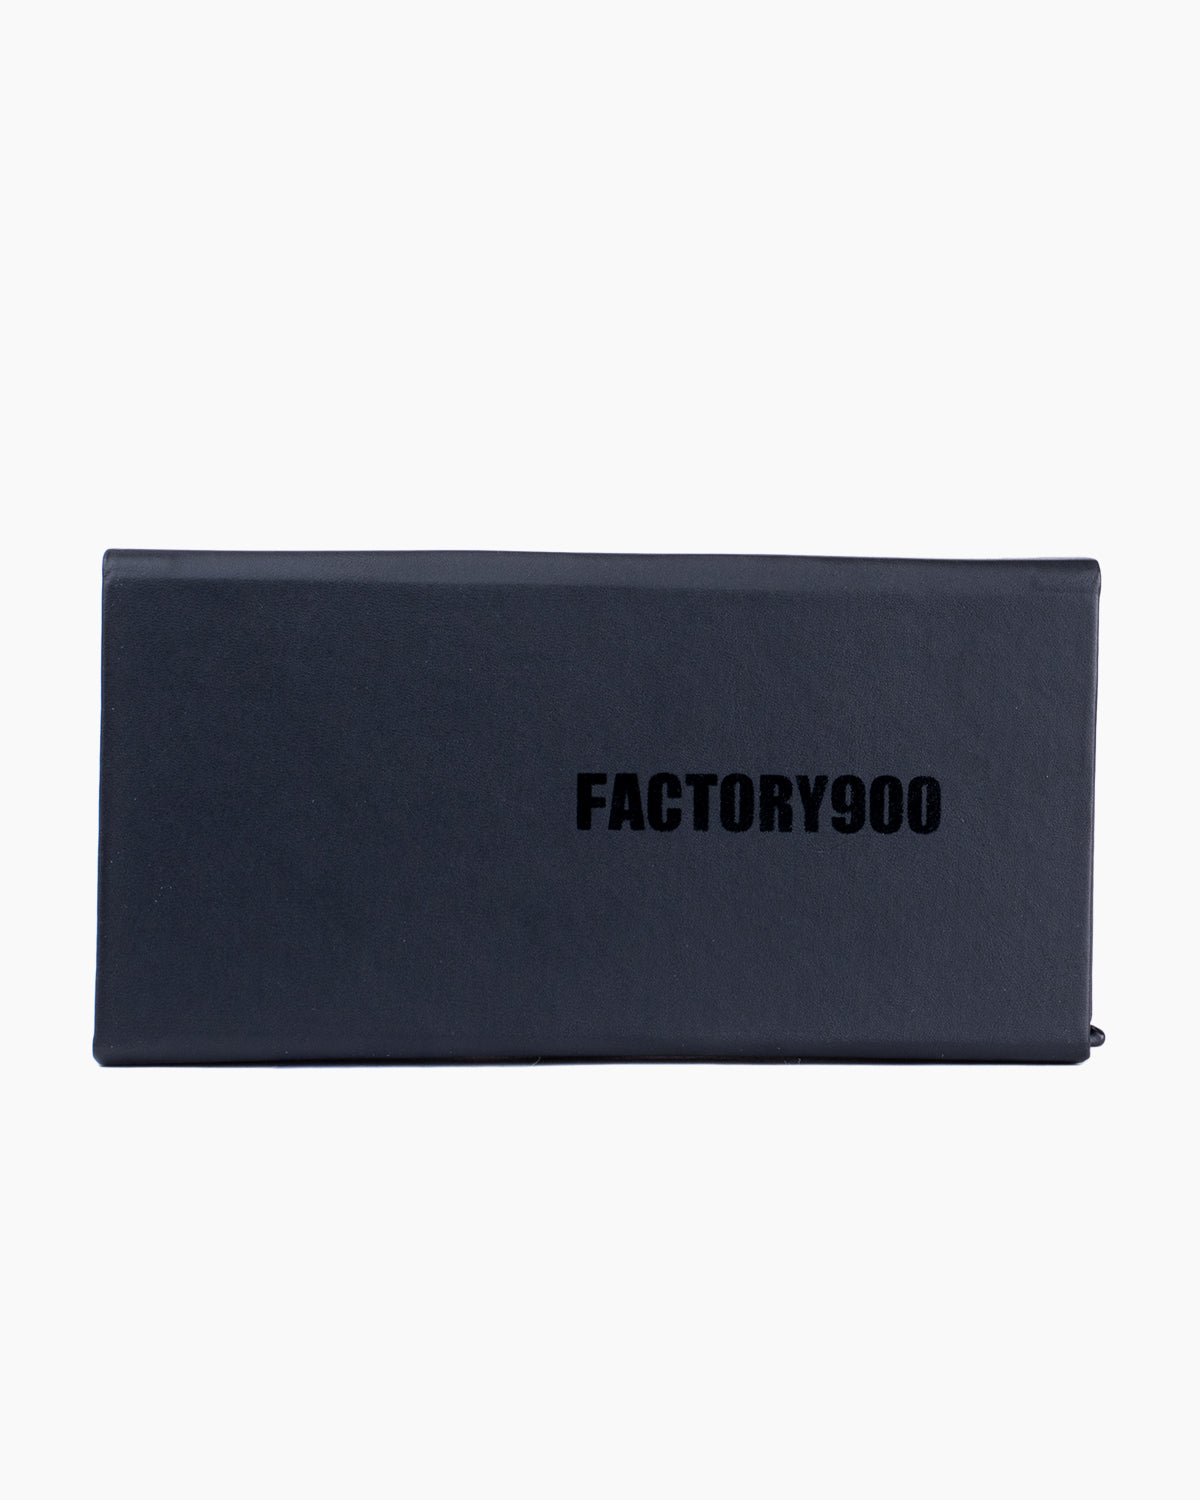 Factory 900 - MF002 - 01 | Bar à lunettes:  Marie-Sophie Dion